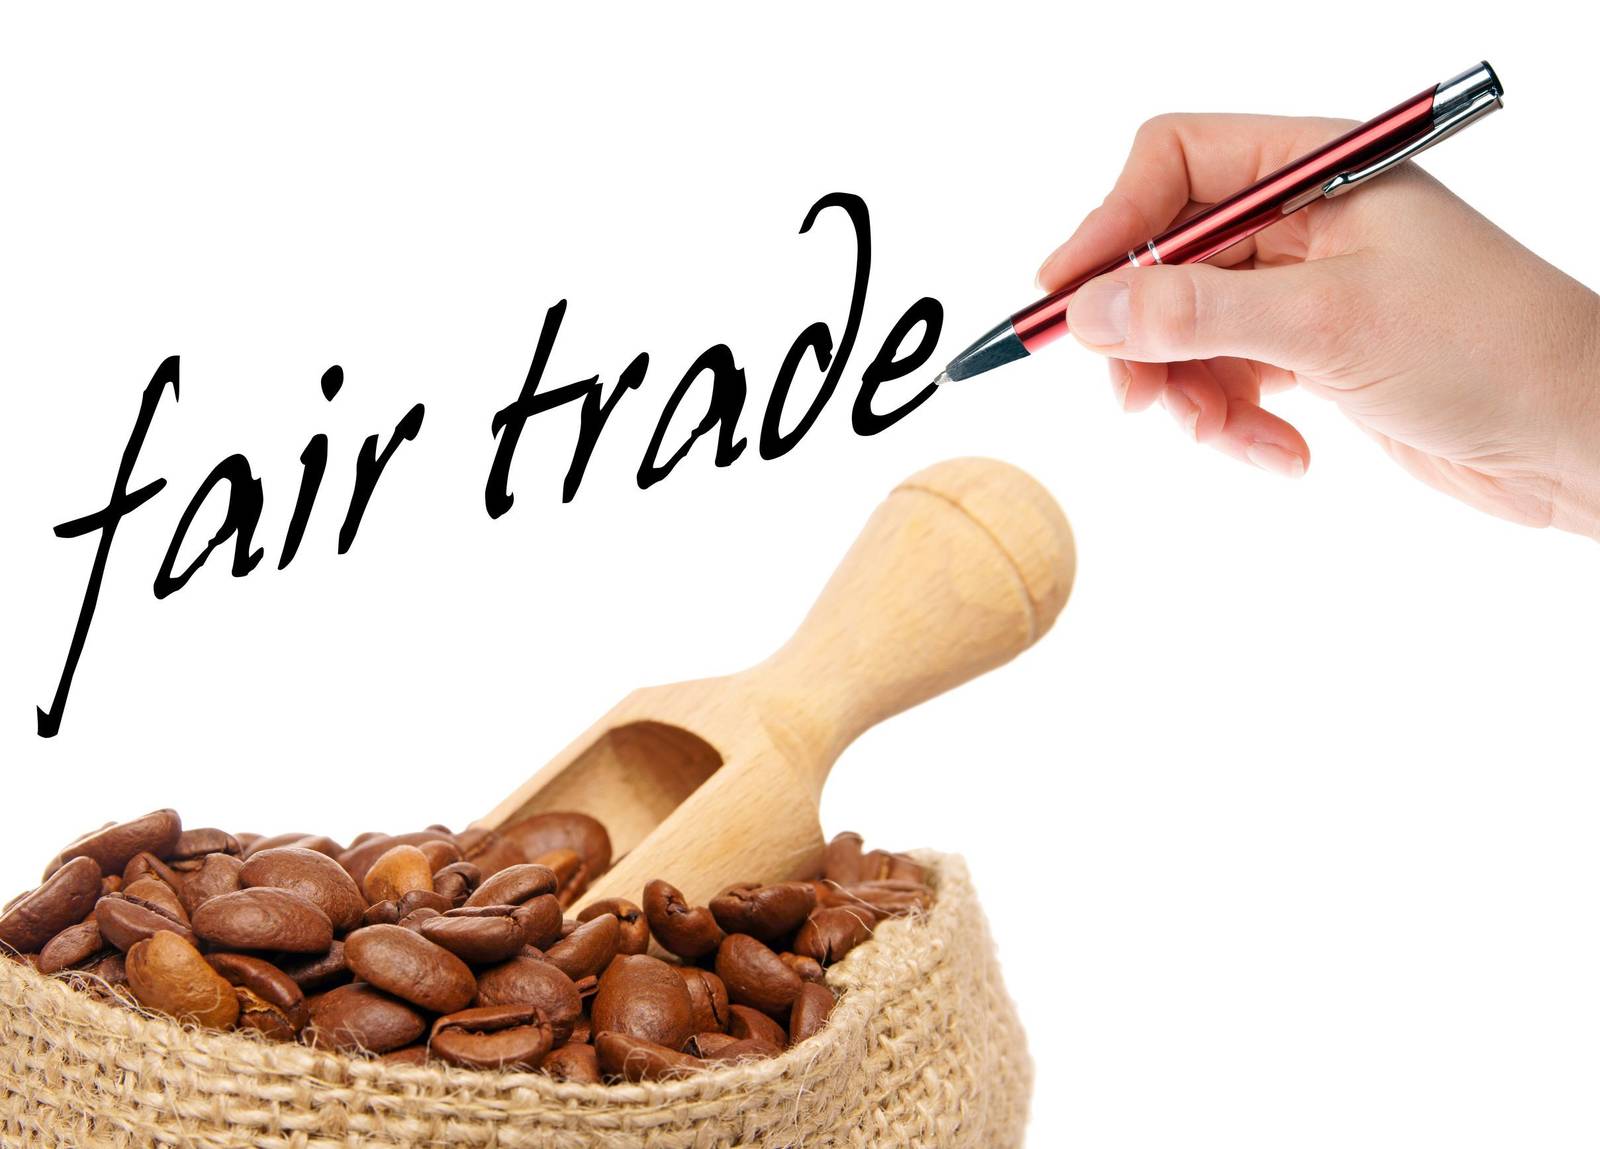 公平貿易對世界的影響